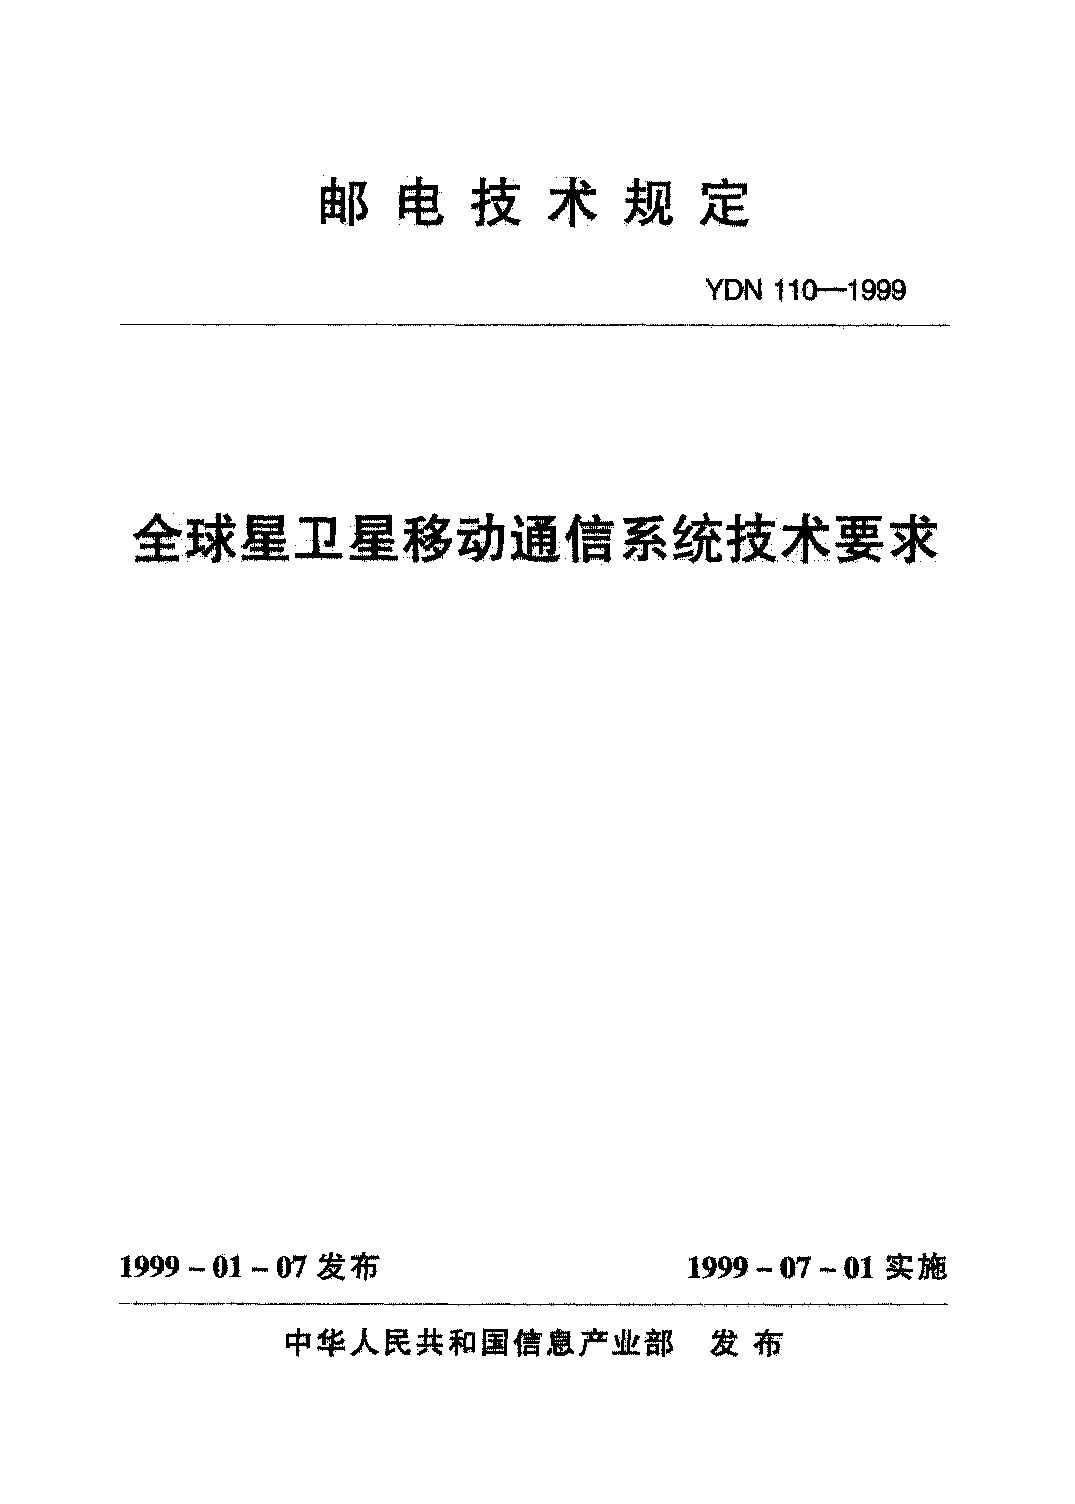 YDN 110-1999封面图